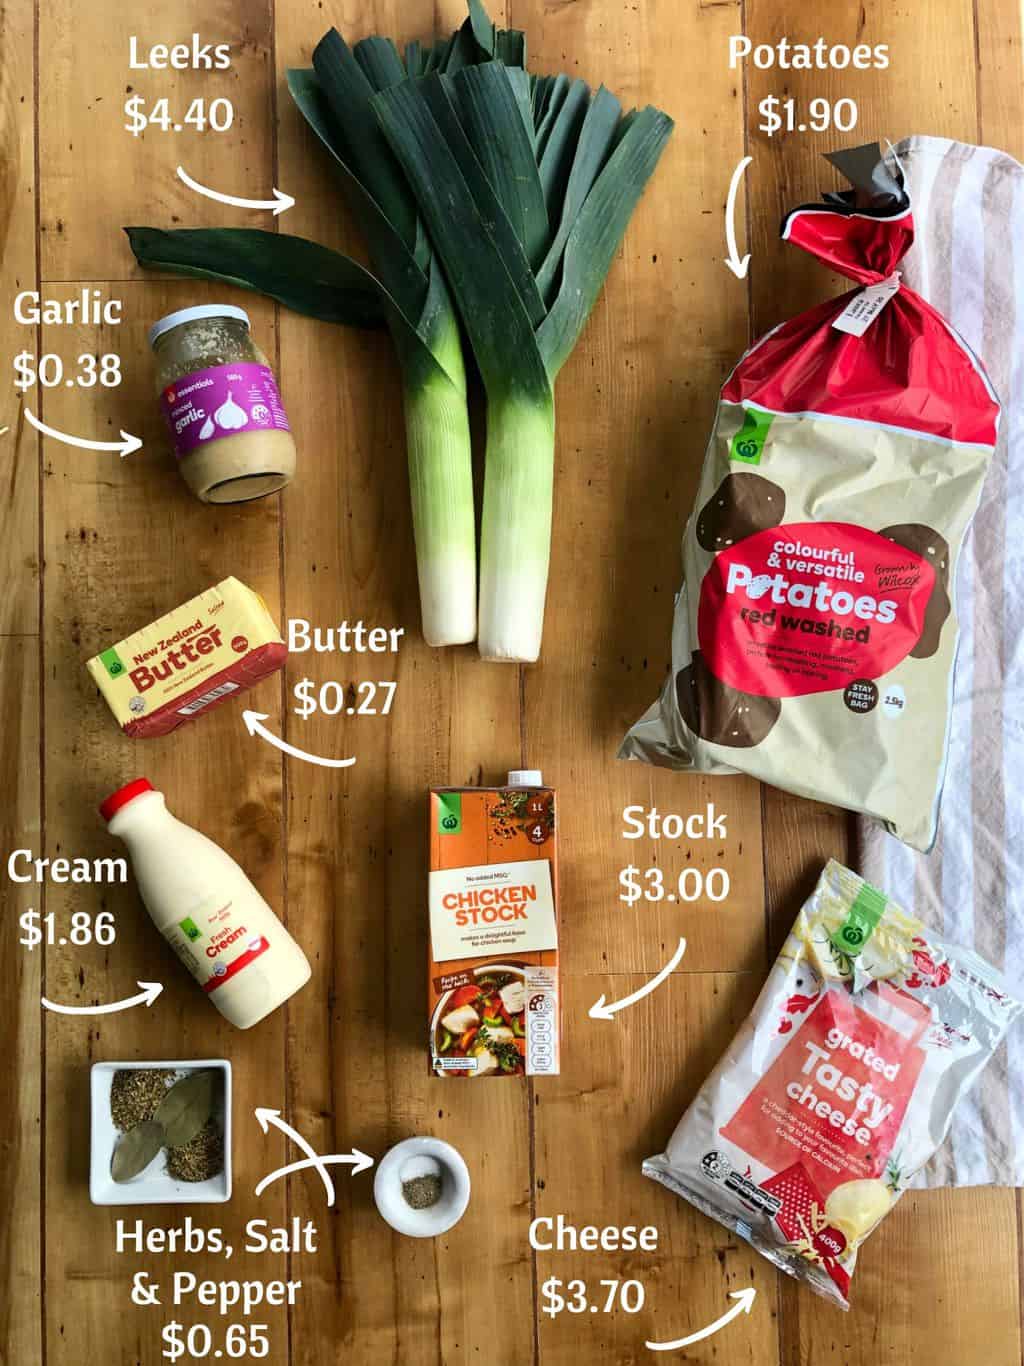 Potato & Leek Soup price breakdown, less than $20 meal